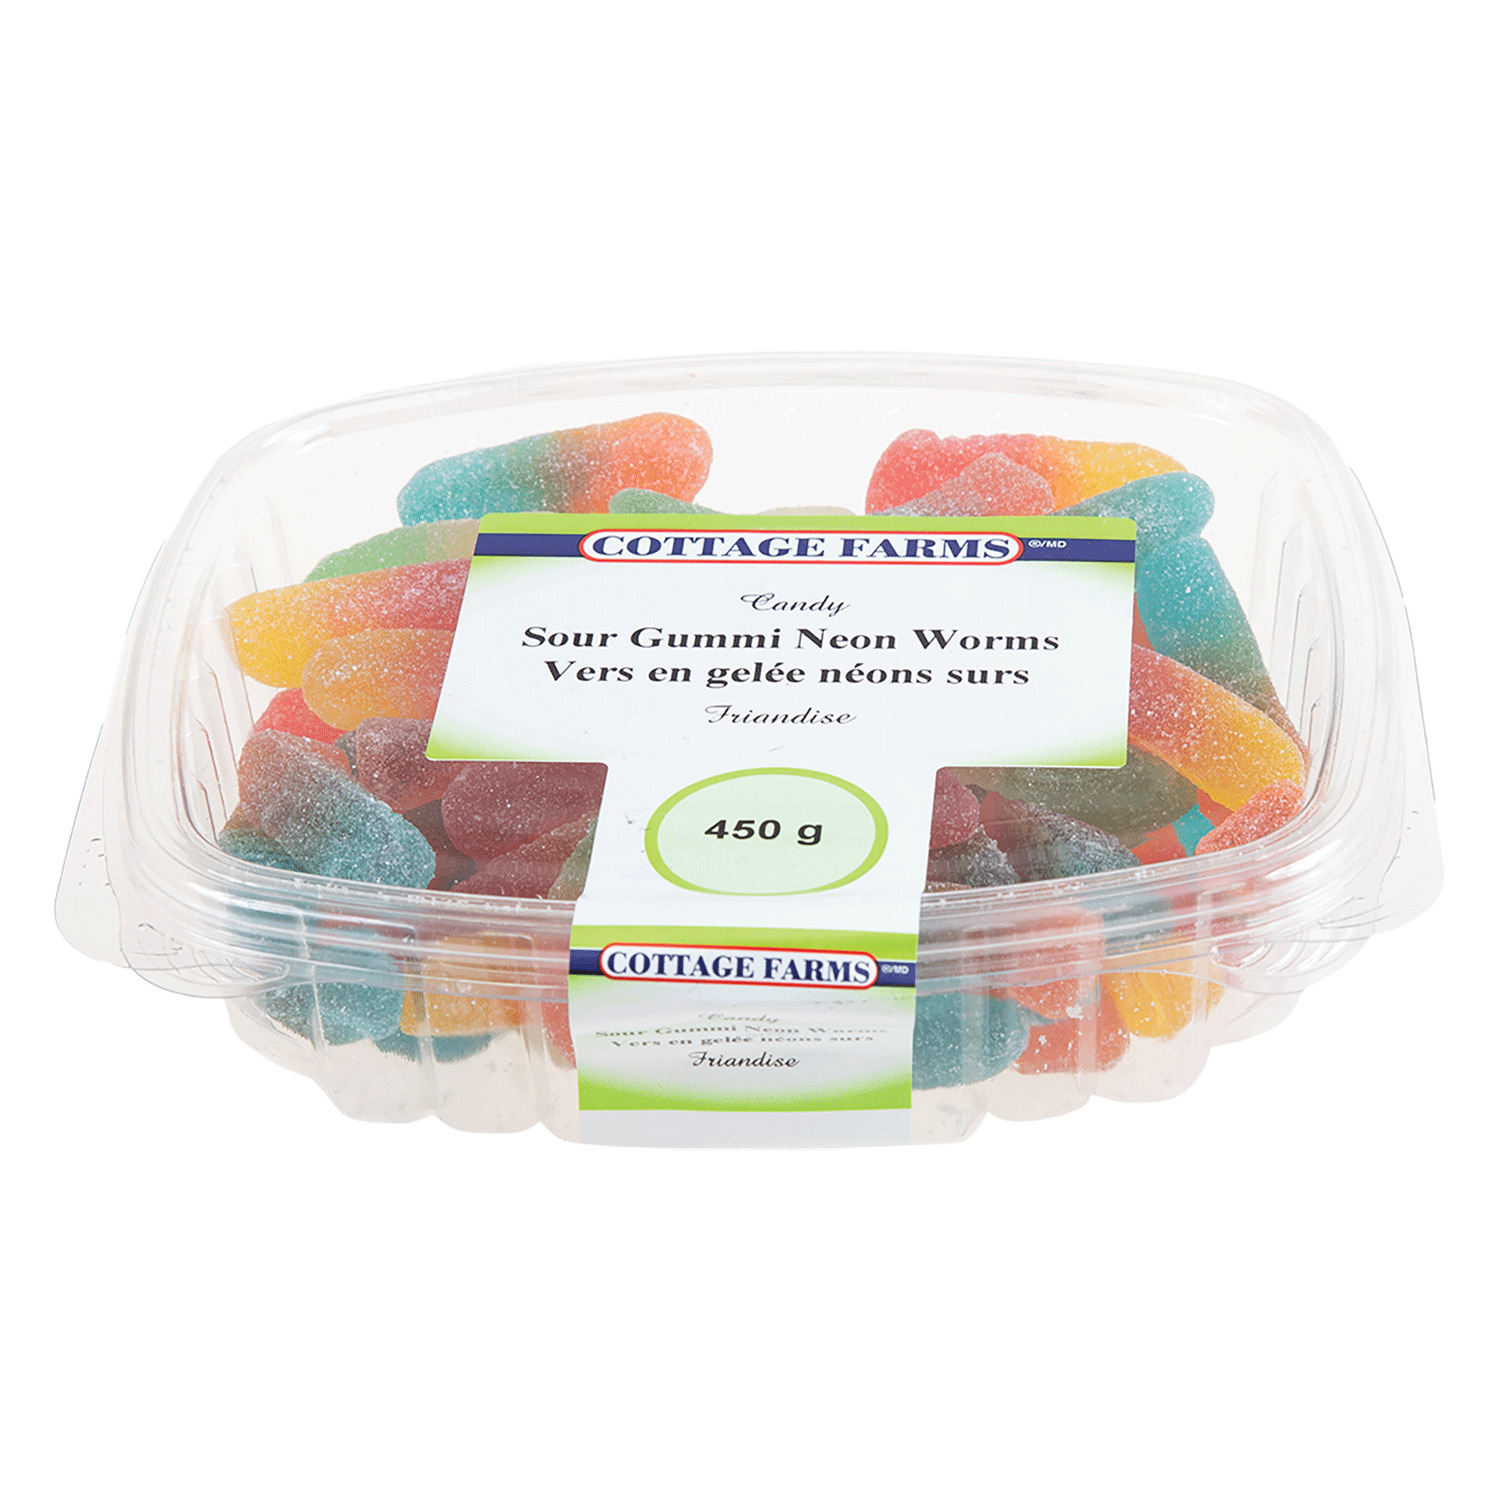 Cottage Farms - Bonbons Gummi néons, vers, 450g